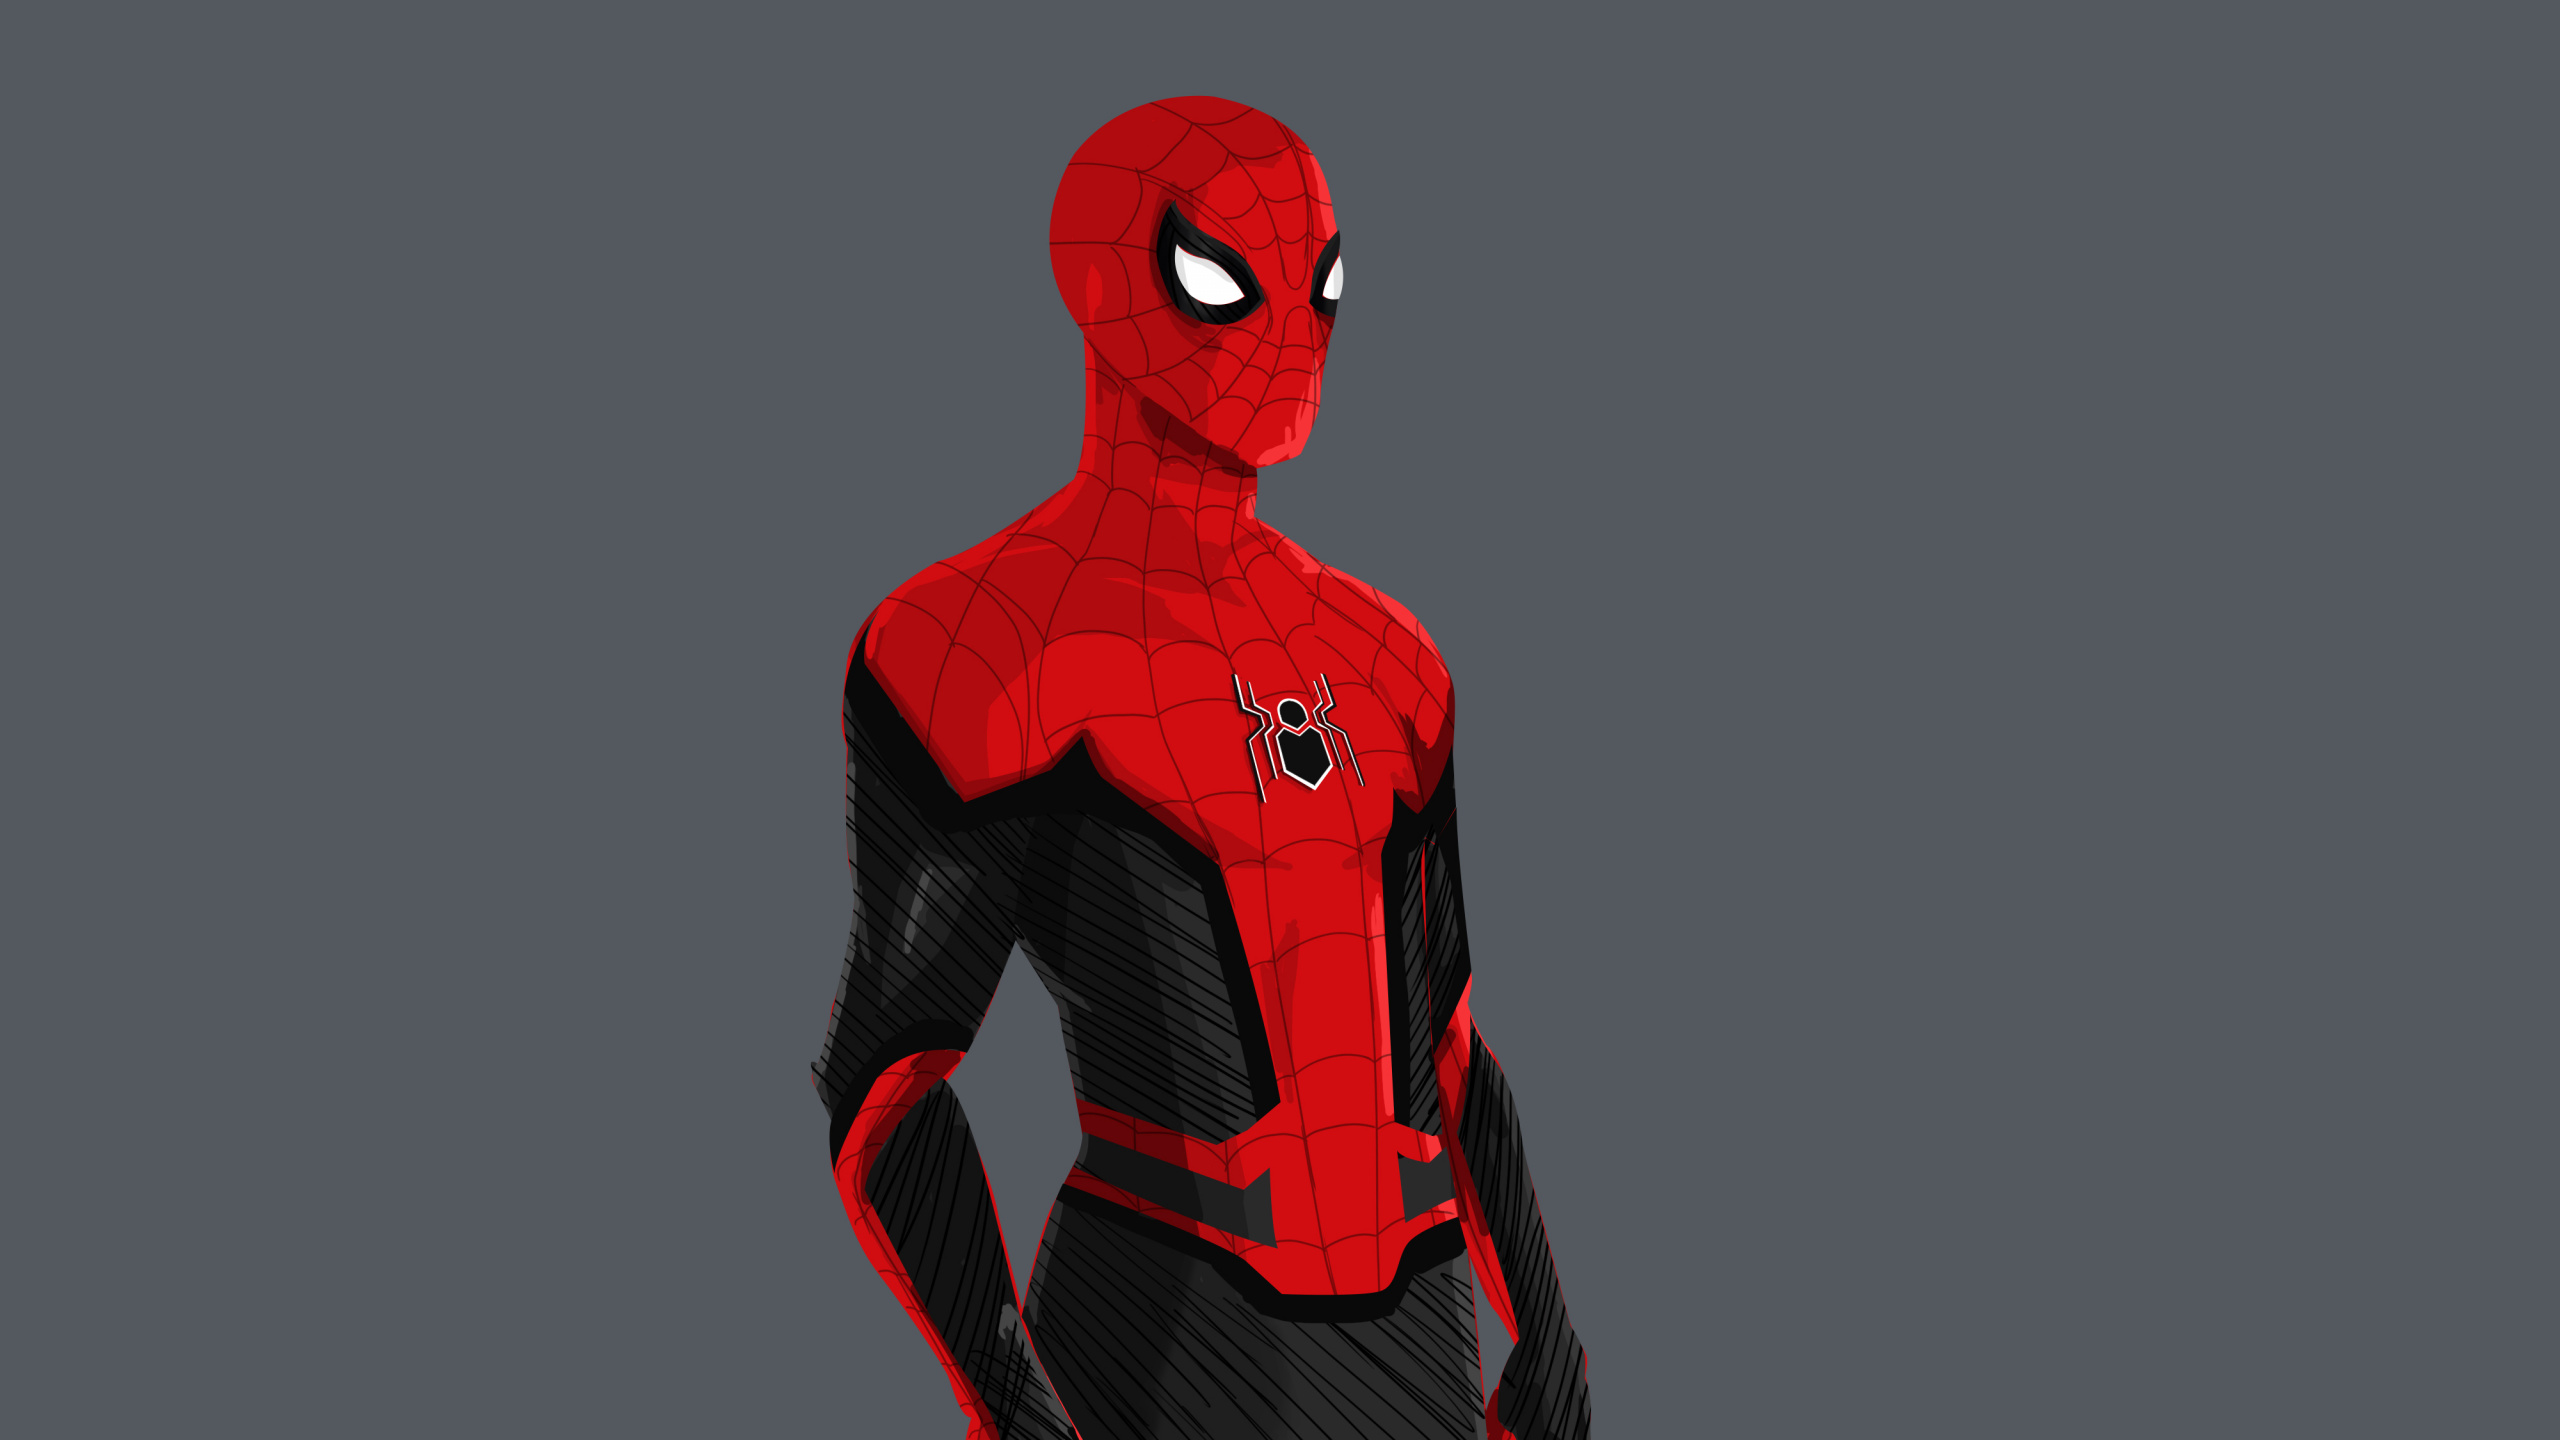 蜘蛛侠回家, 艺术, 概念艺术, Spider-man, 超级英雄 壁纸 2560x1440 允许